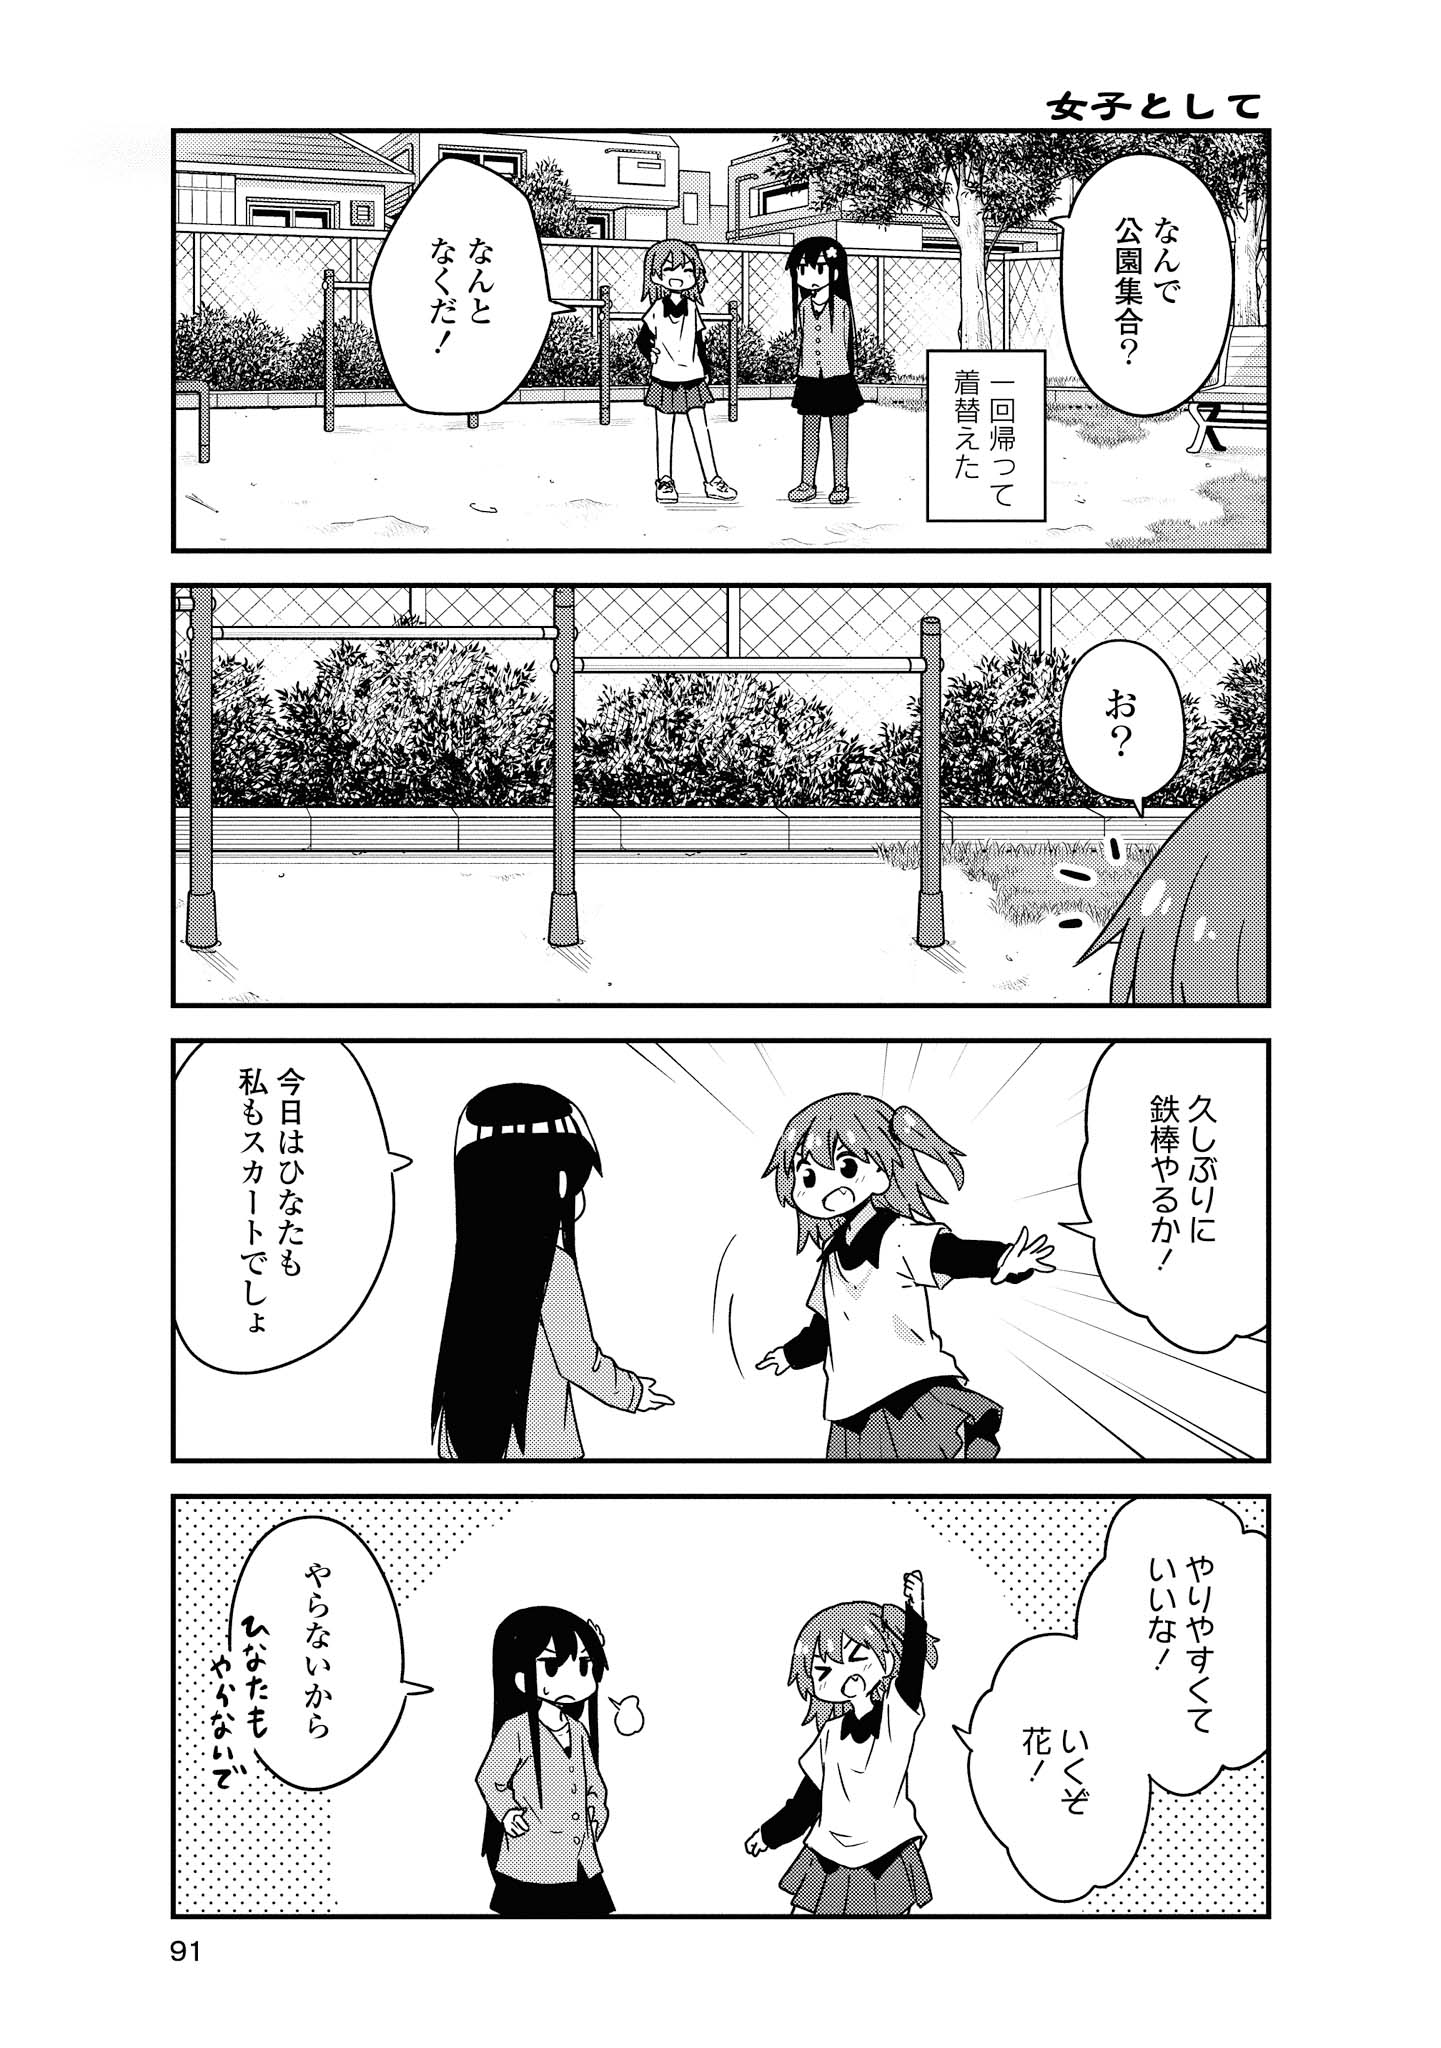 Watashi ni Tenshi ga Maiorita! - Chapter 49 - Page 3